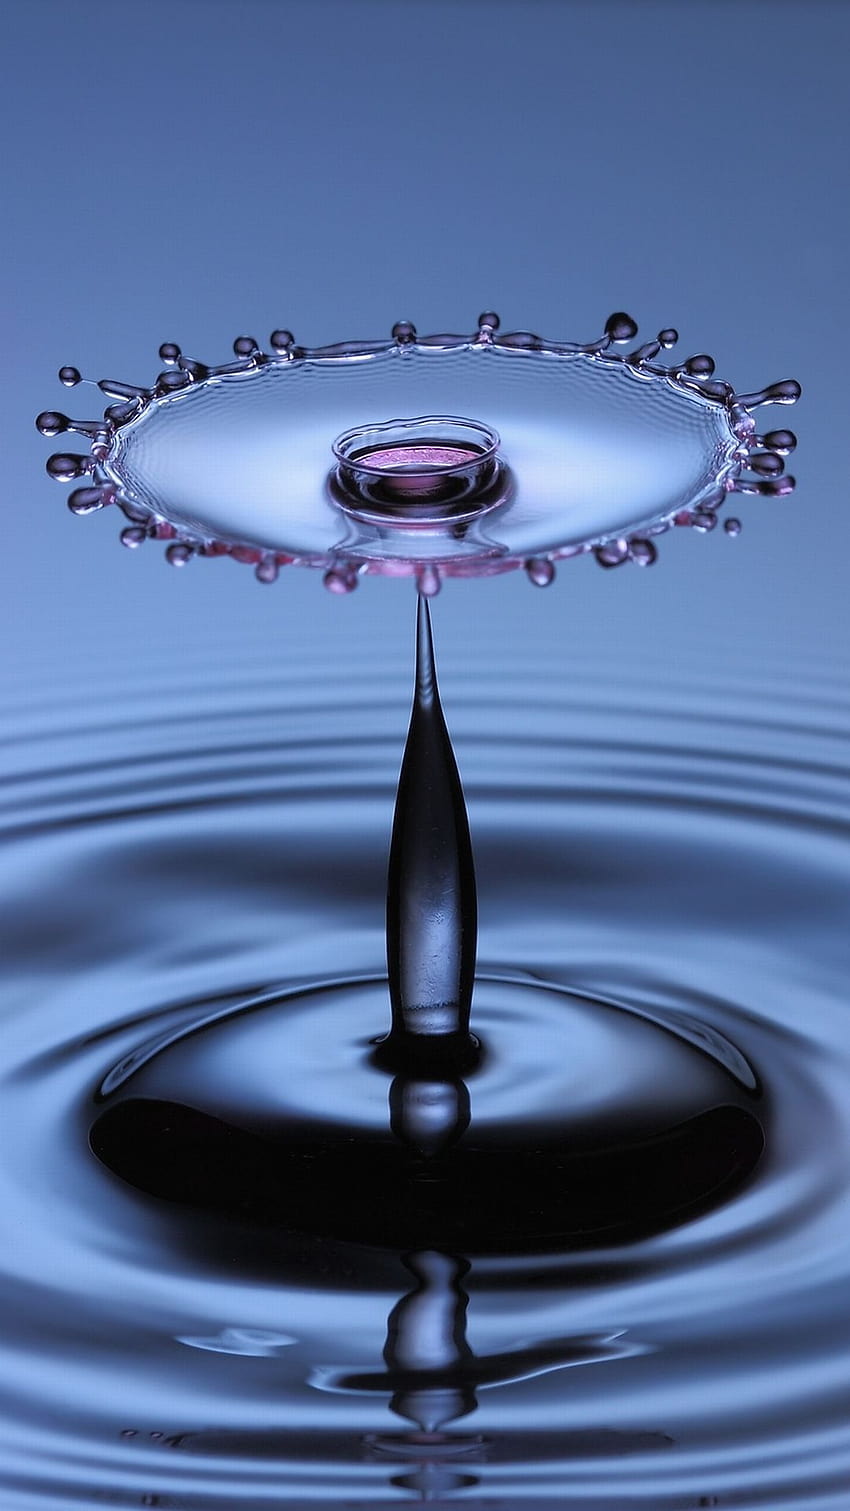 49 iPhone Water Drops Wallpaper  WallpaperSafari